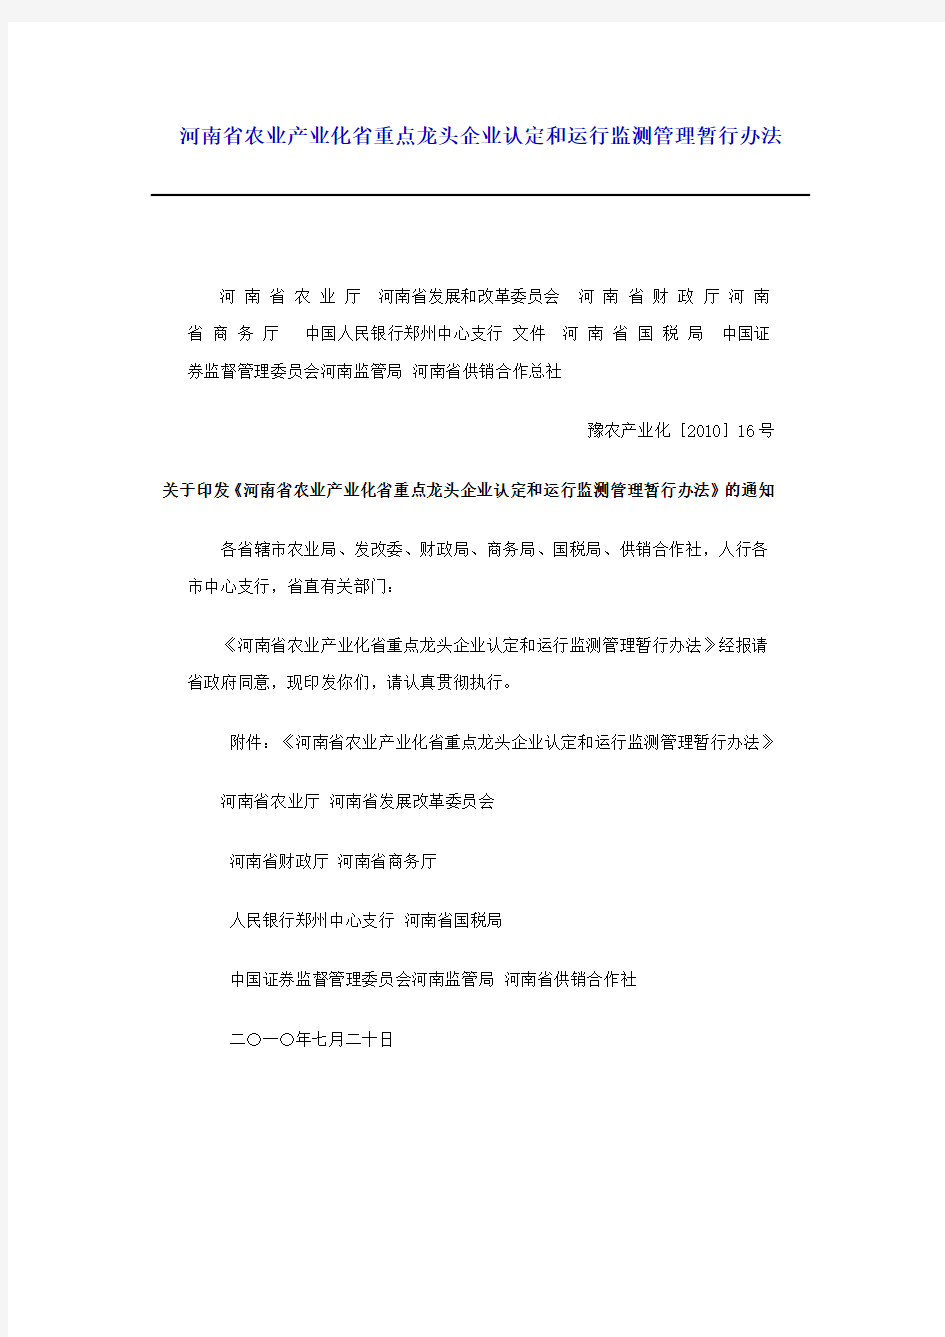 河南省农业产业化省重点龙头企业认定和运行监测管理暂行办法